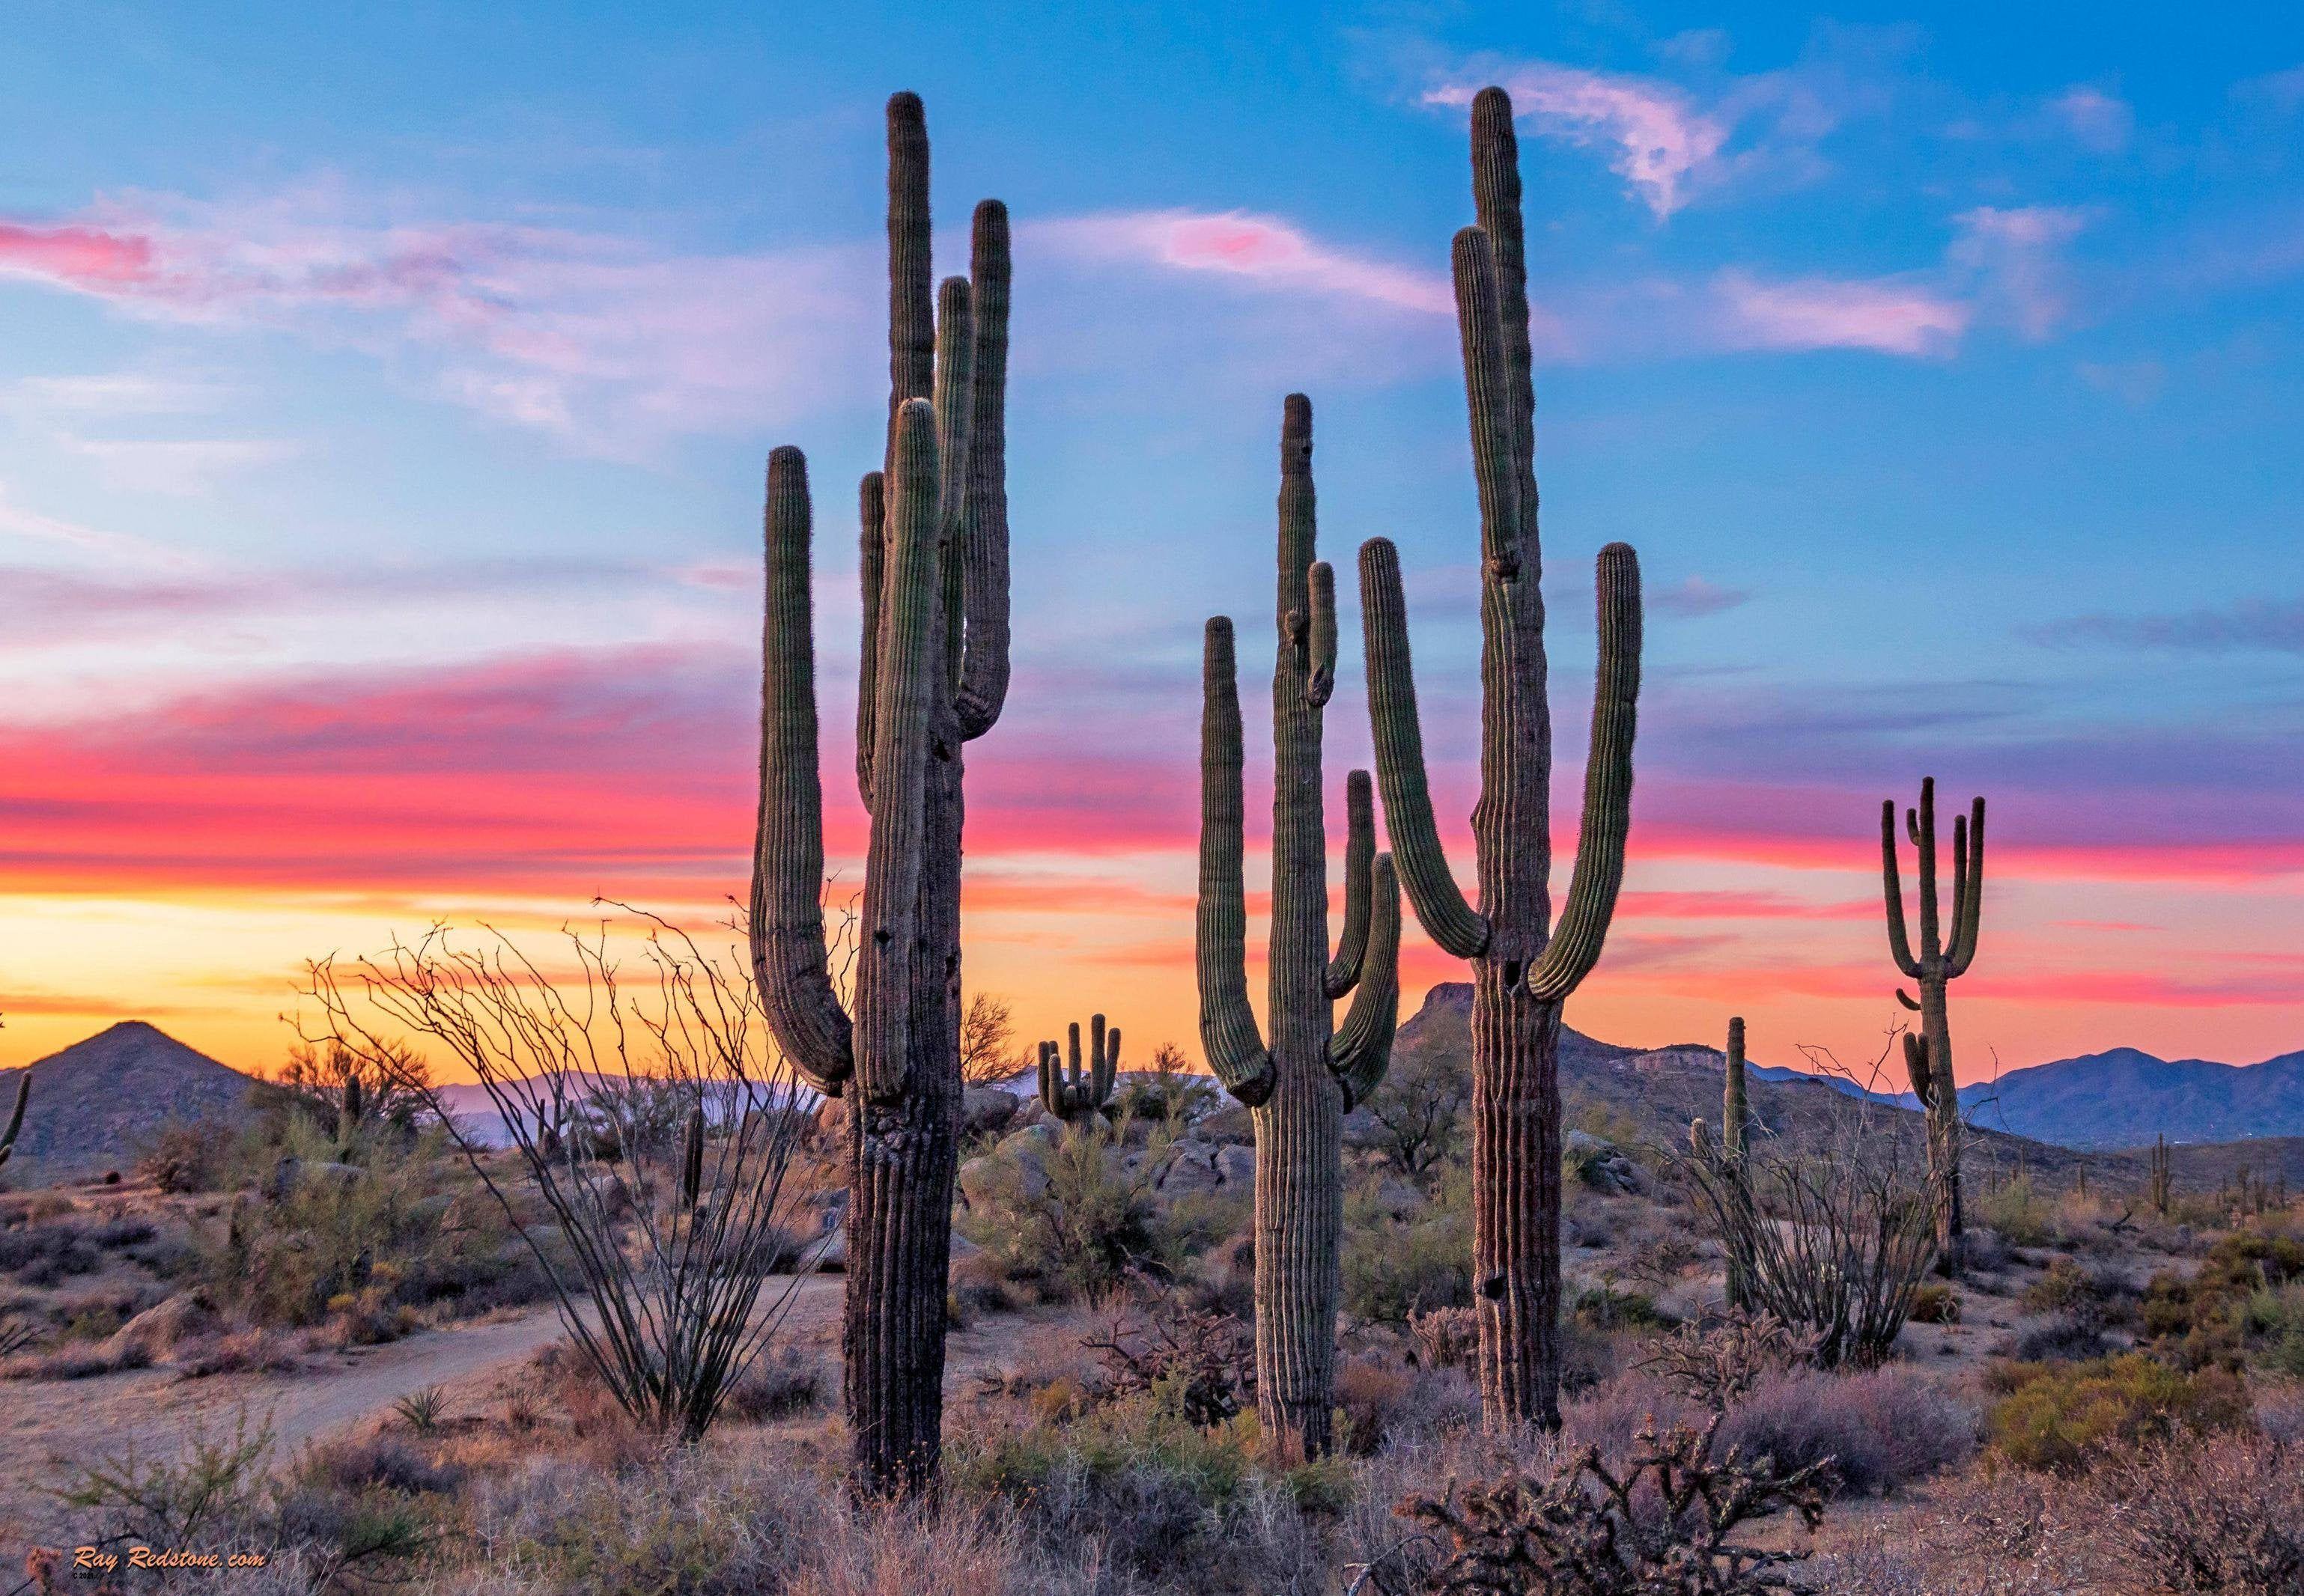 Cactus Landscape Wallpapers - Top Free Cactus Landscape Backgrounds ...